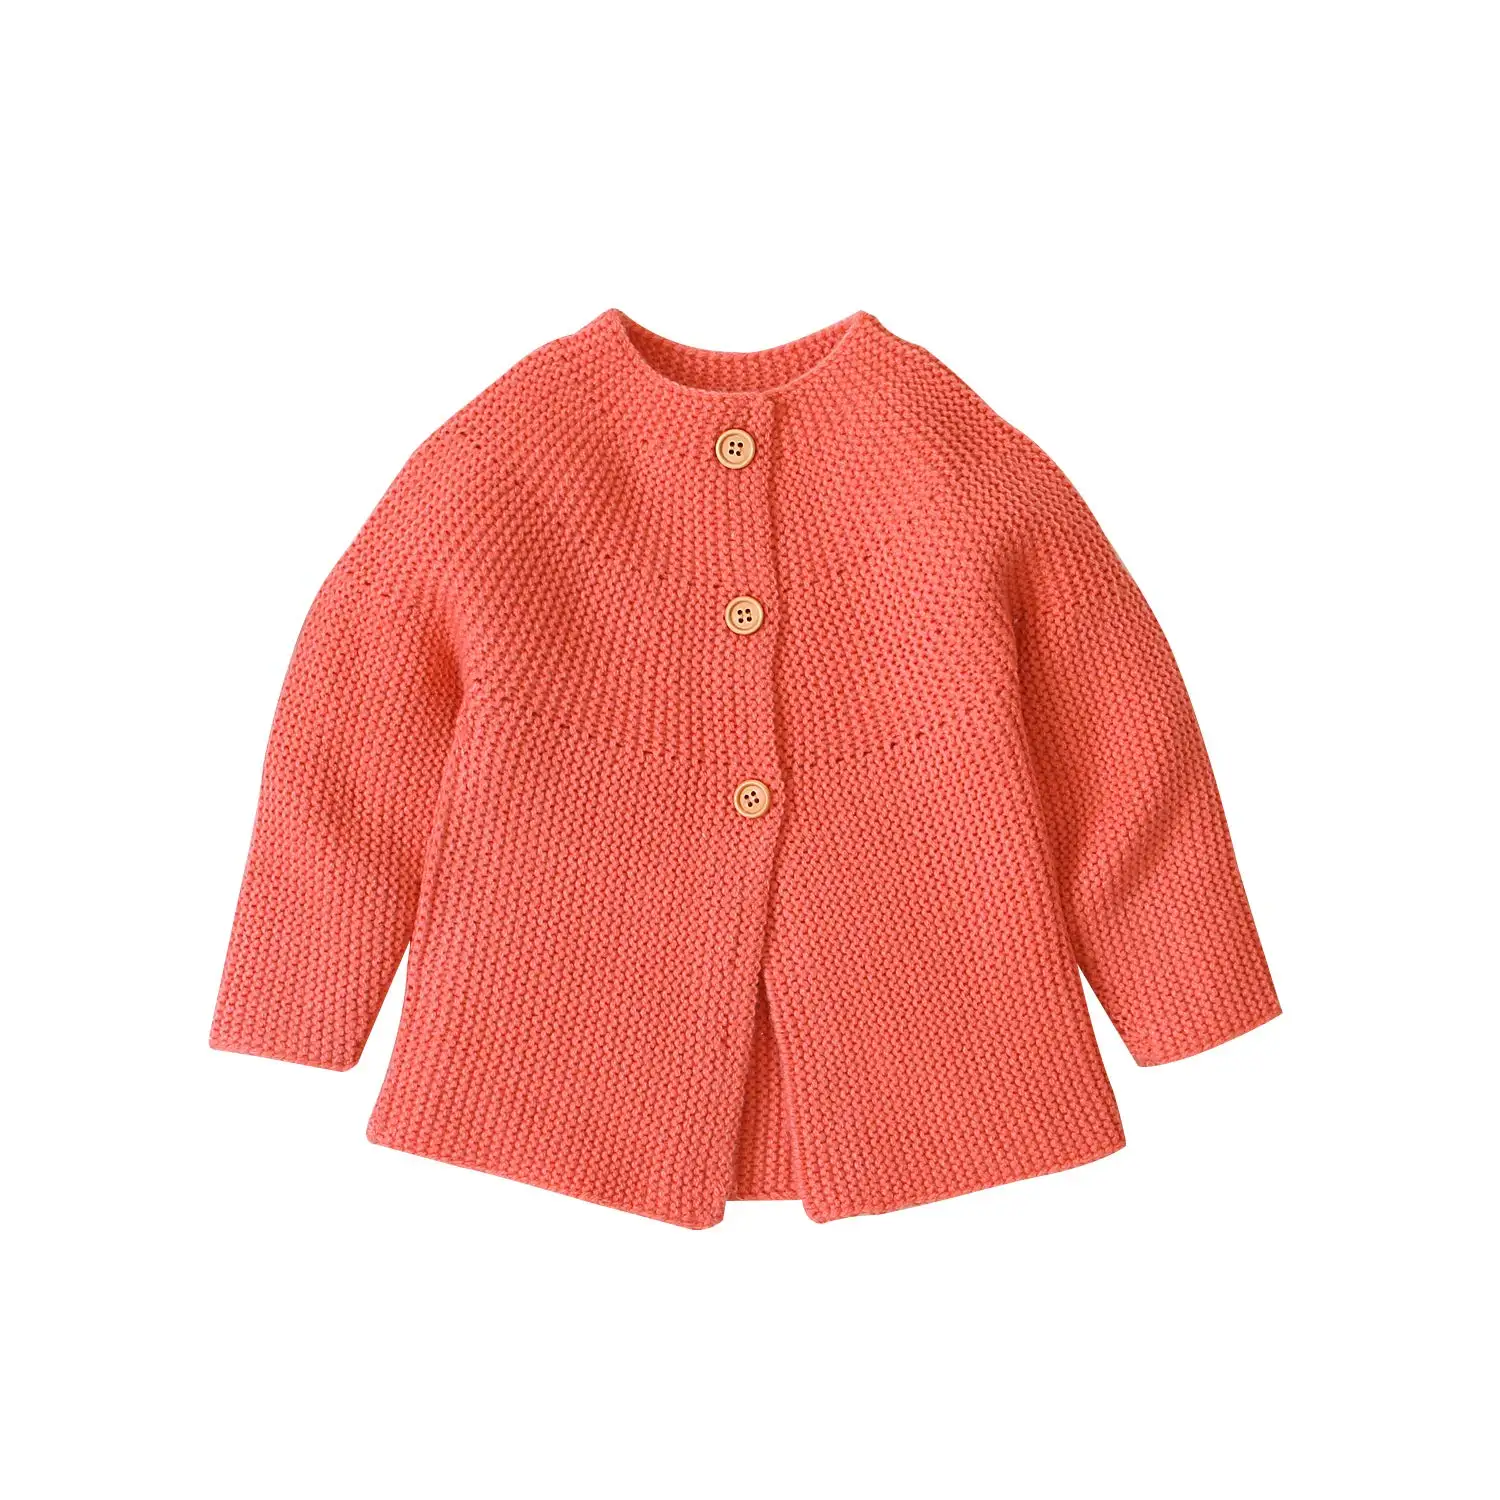 Лидер продаж, Новые вязаные свитера для новорожденных девочек, куртка, пальто, верхняя одежда, верхняя одежда, зимнее теплое пальто - Color: Orange